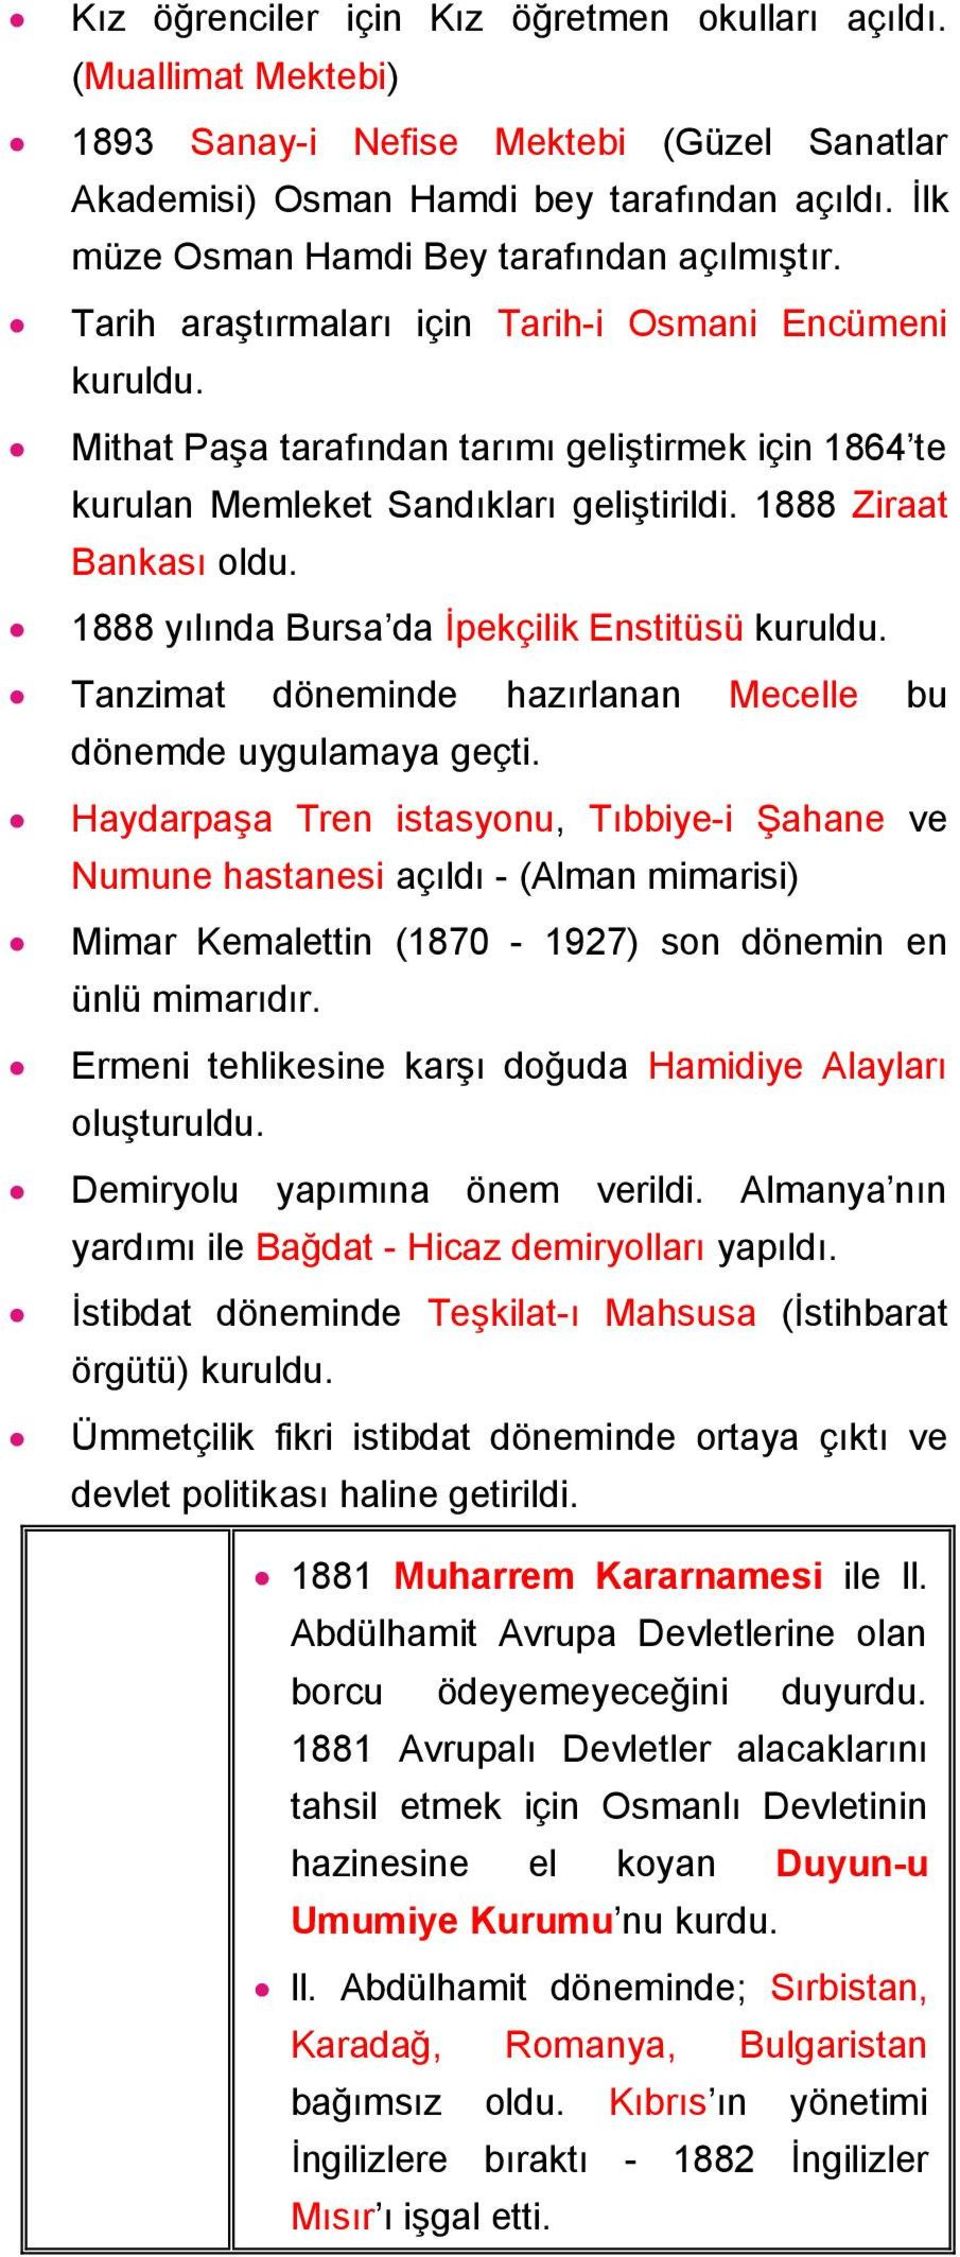 Mithat Paşa tarafından tarımı geliştirmek için 1864 te kurulan Memleket Sandıkları geliştirildi. 1888 Ziraat Bankası oldu. 1888 yılında Bursa da İpekçilik Enstitüsü kuruldu.